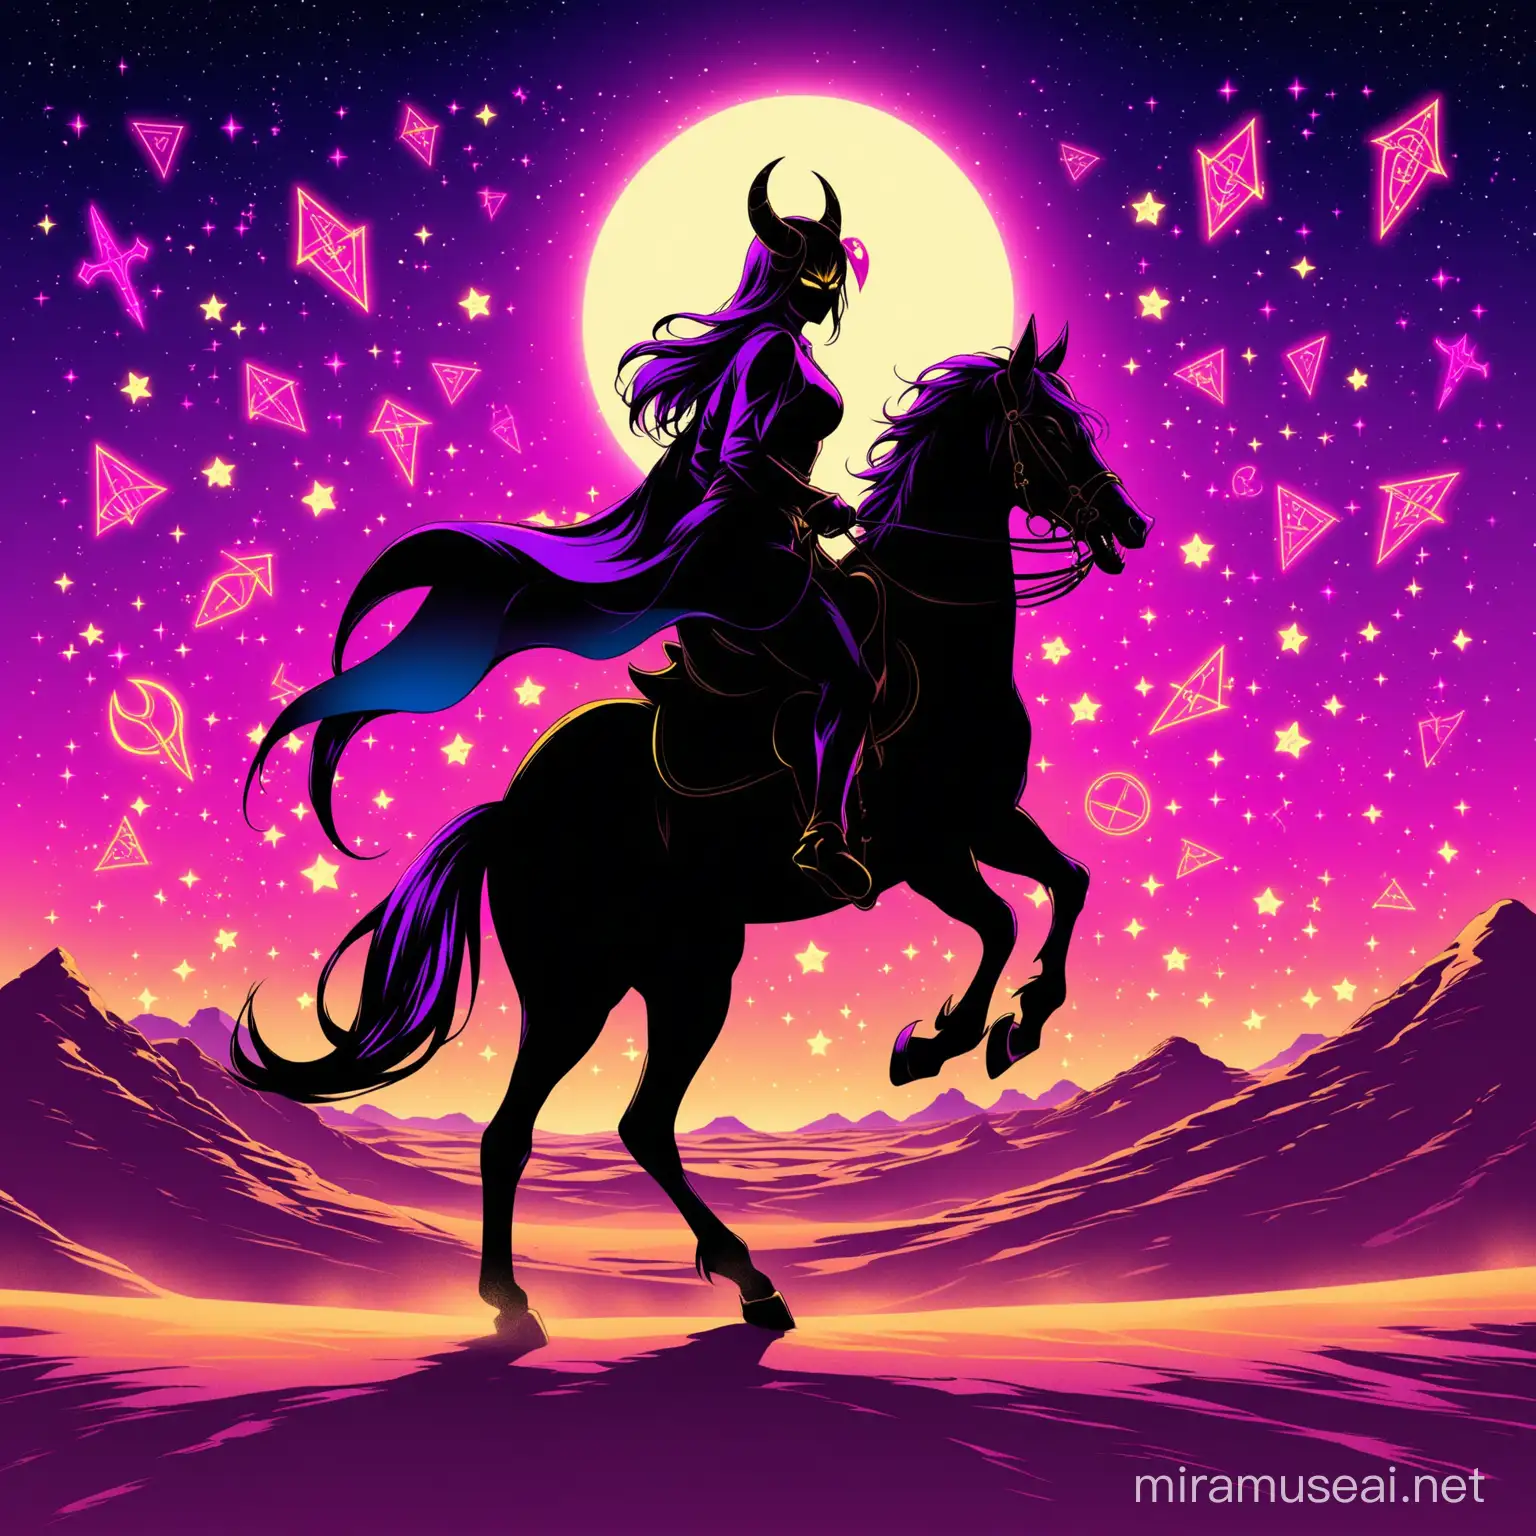 sillouette of the devil riding a horse
appreance-horns/full body/noir pink/blue/yellow/gold/demon-runes/
background-sand/desert/full moon stars/neon purple